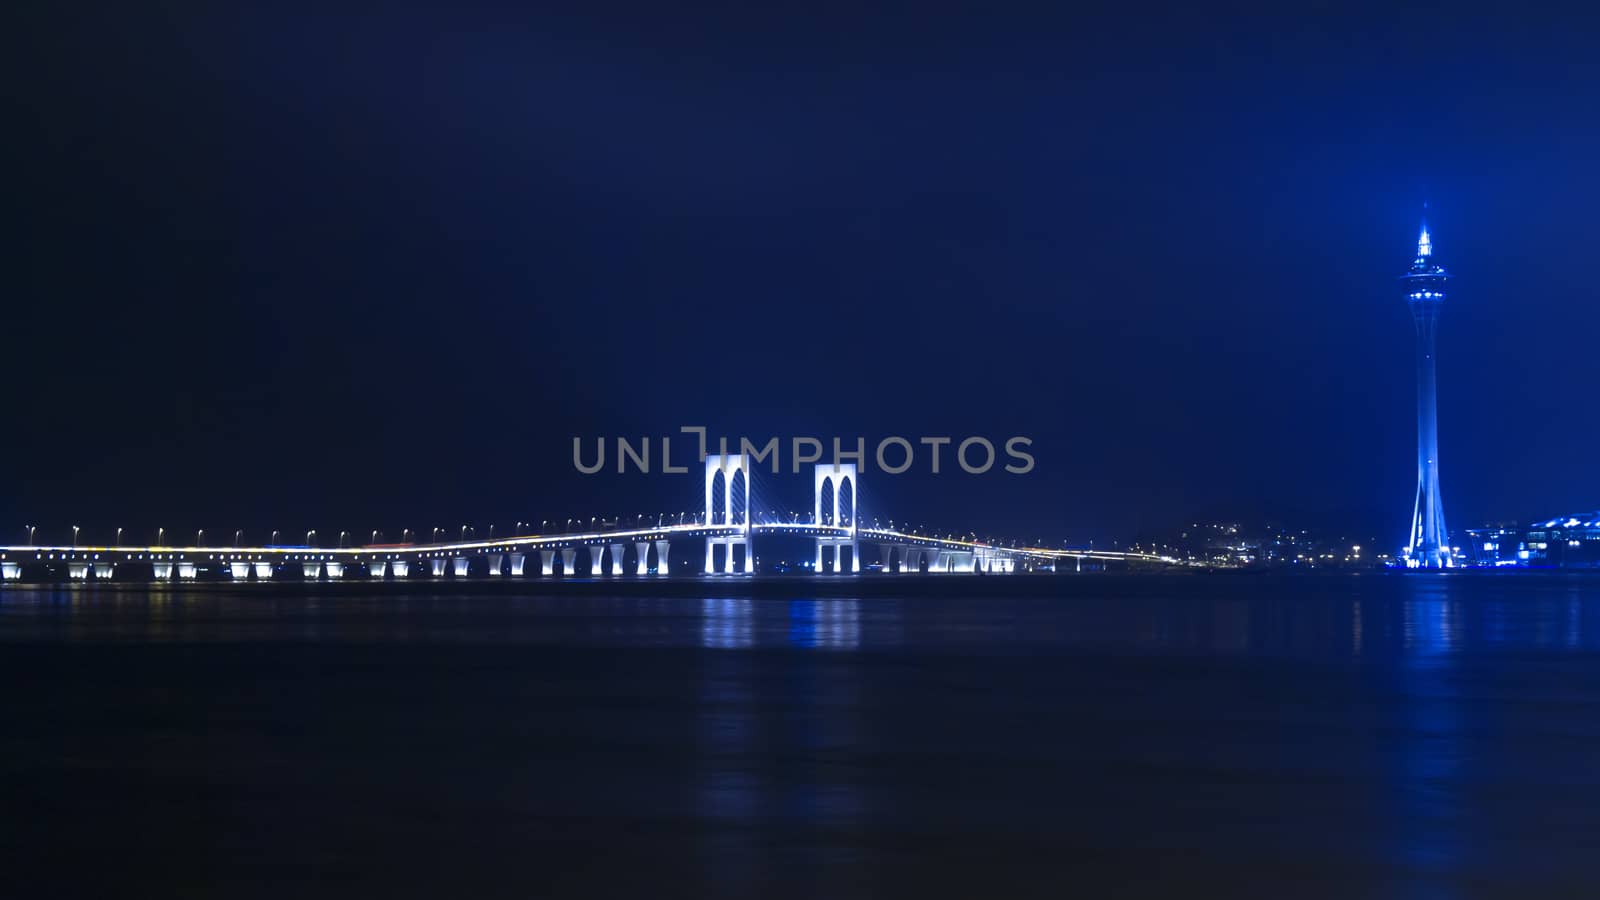 Macau Tower and Sai Van Bridge at night. 